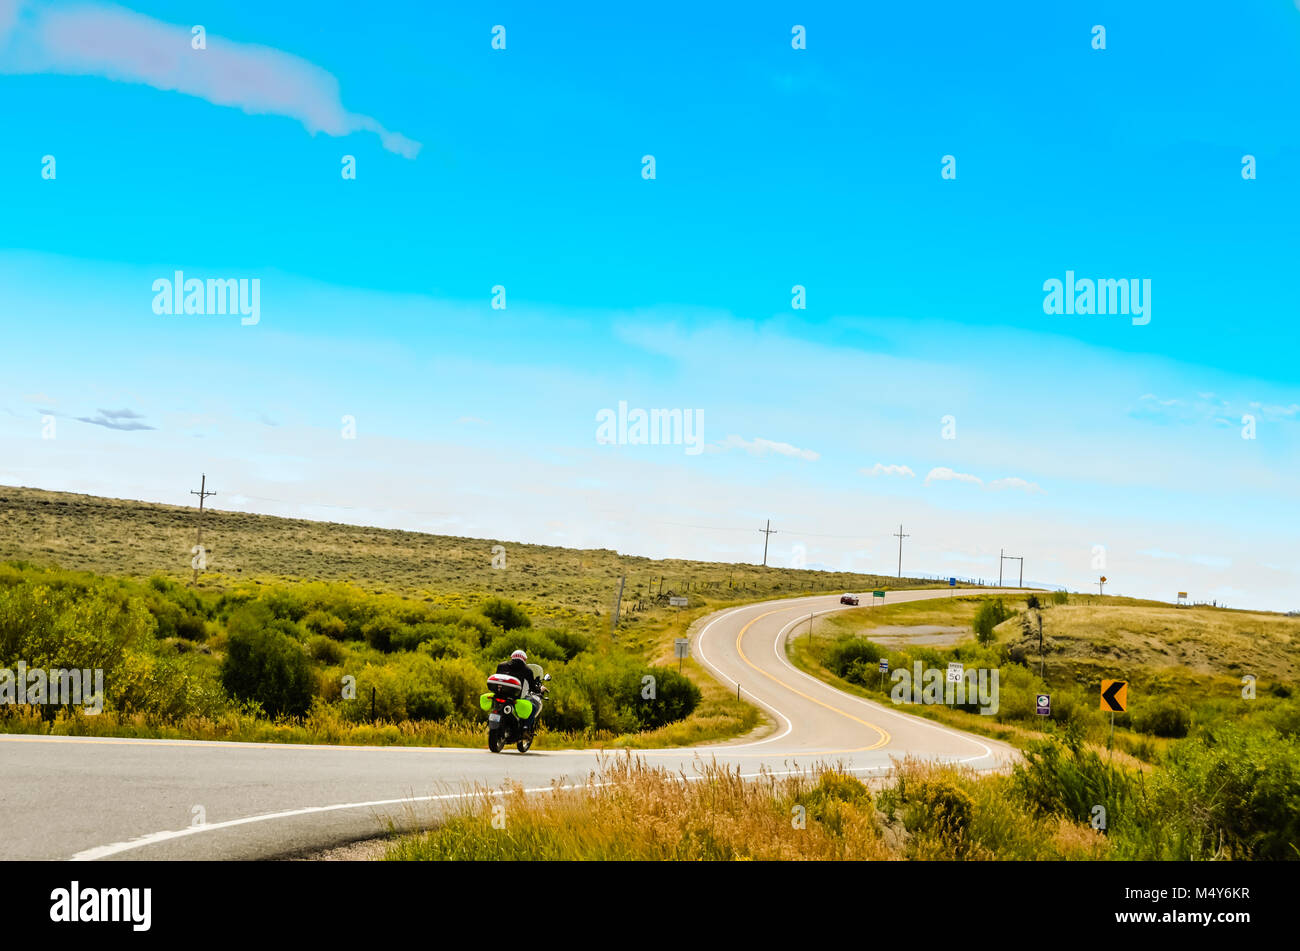 Ein Motorradfahrer fährt auf einer kurvigen Straße, die Kurven vor und nach oben, nichts als Wiesen auf beiden Seiten und einem großen blauen Himmel darüber. Stockfoto